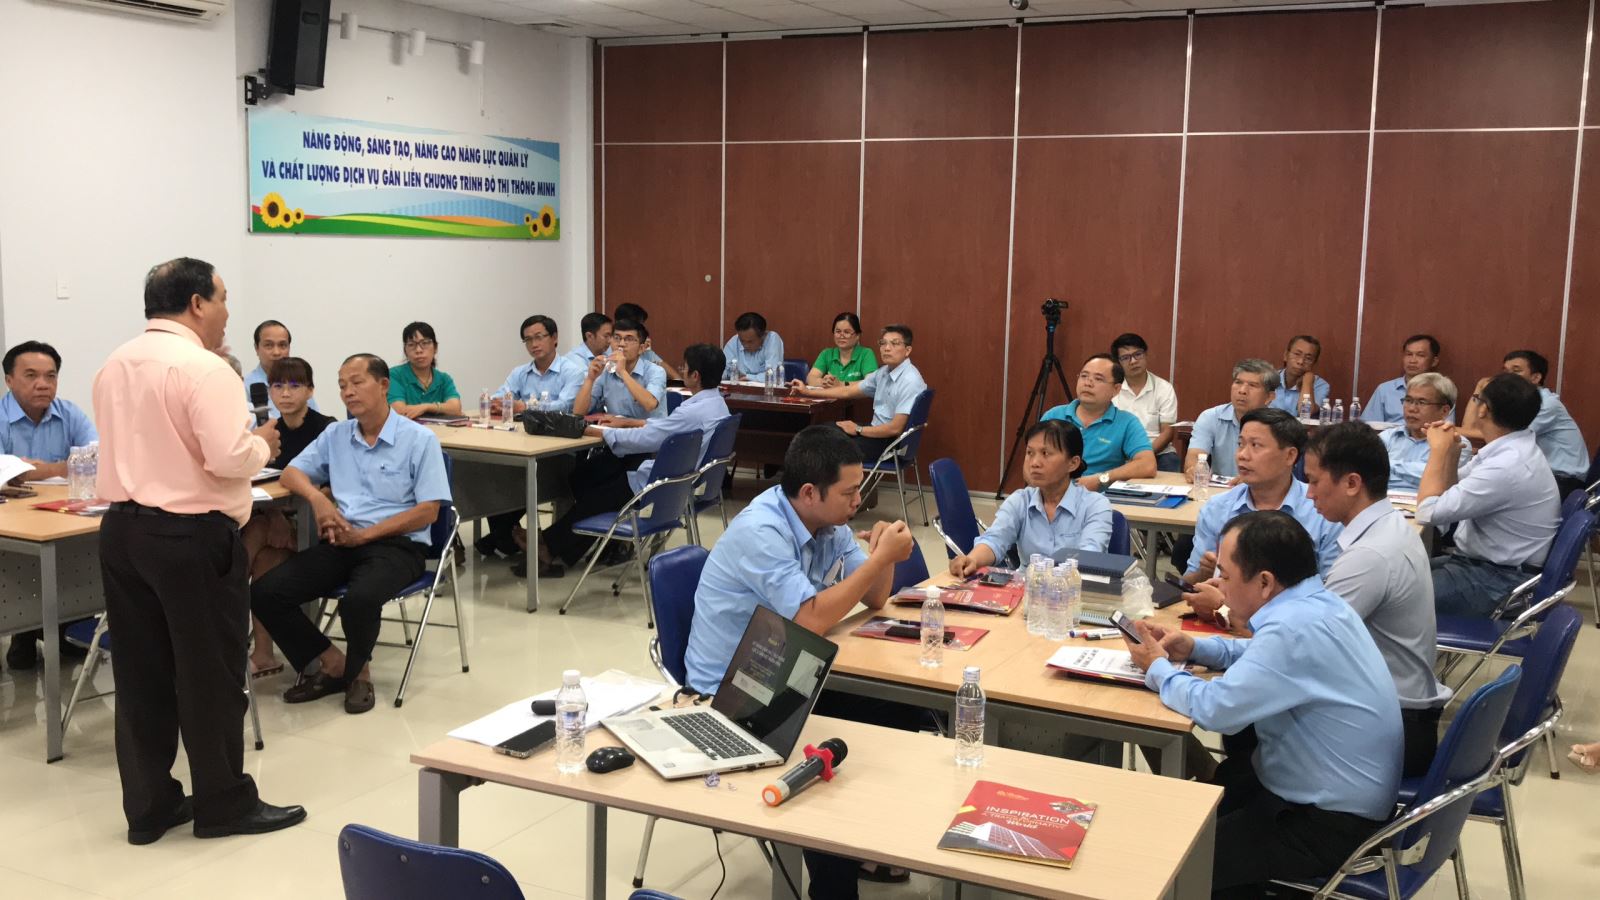 Ông Phan Thanh Bình giảng dạy về kỹ năng quản trị cho các Cán bộ quản lý